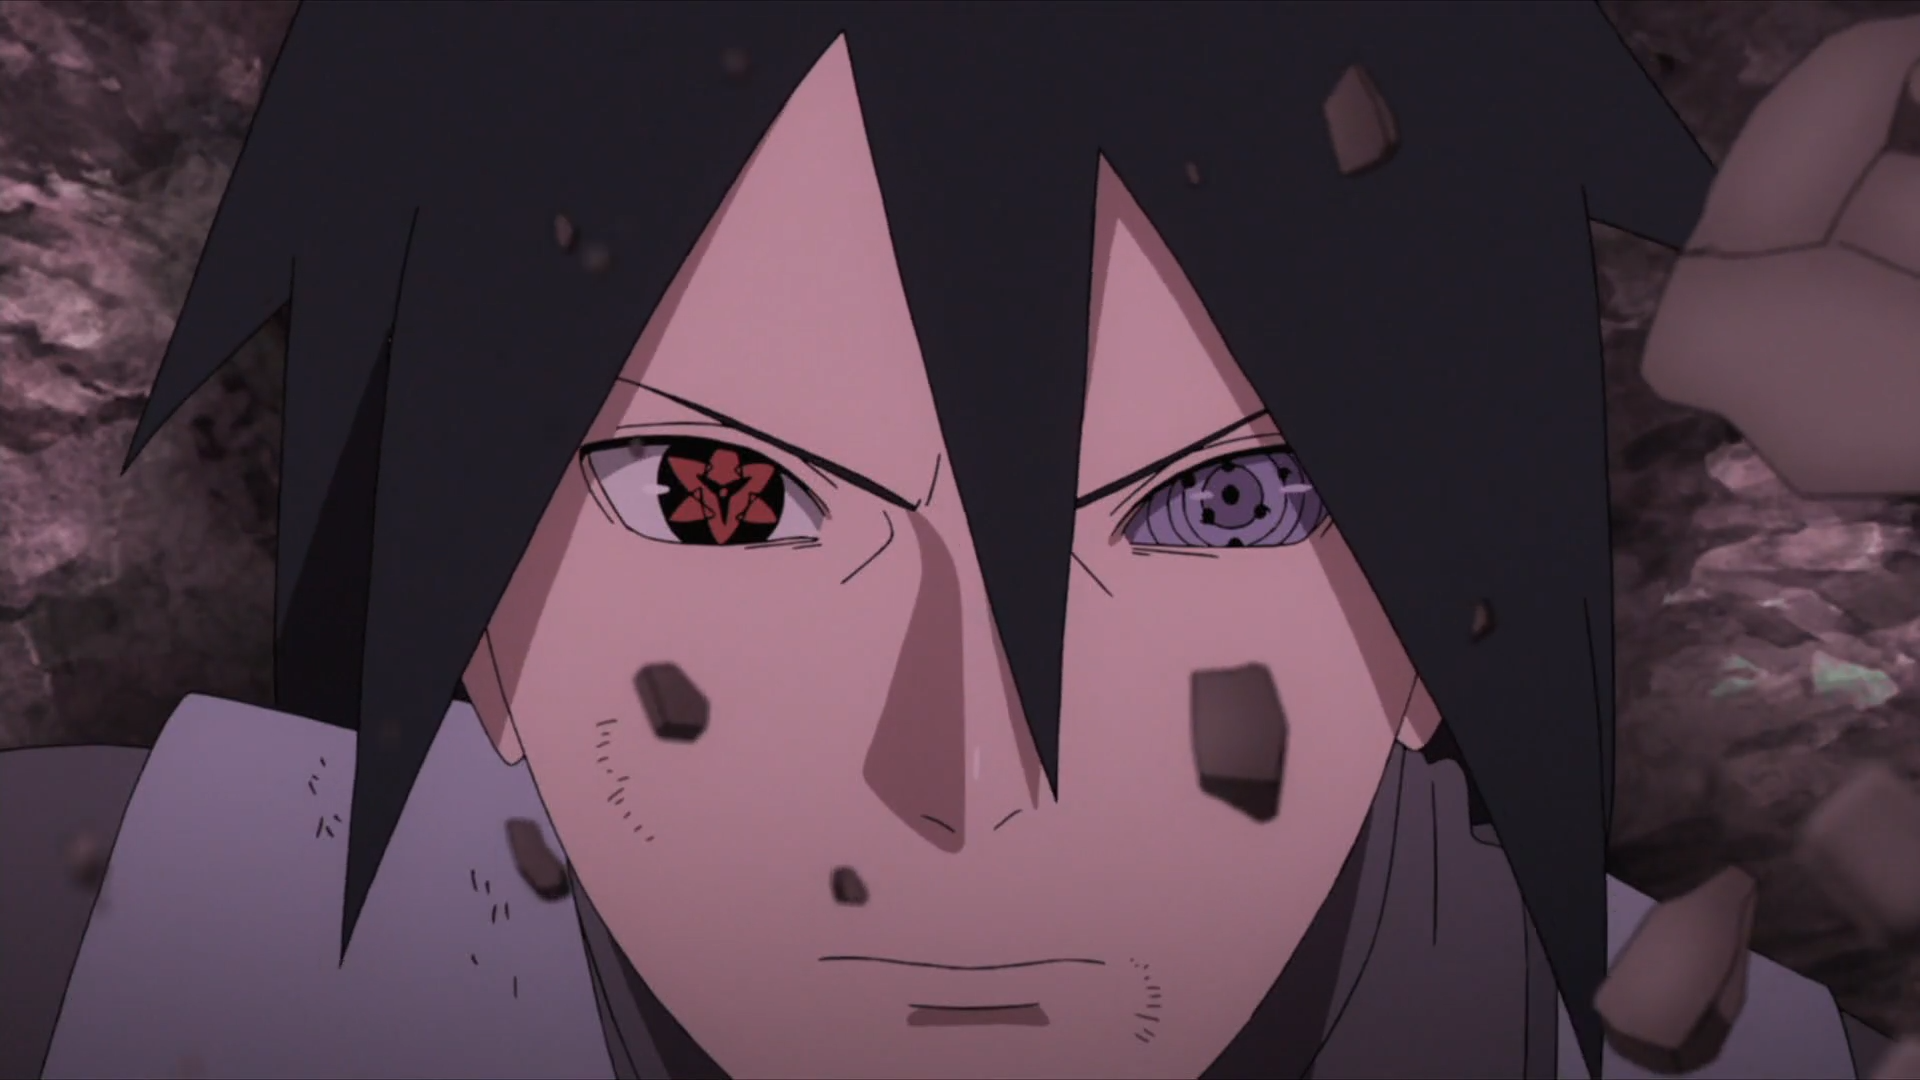 5 personagens de Boruto: Naruto Next Generations que já estão no